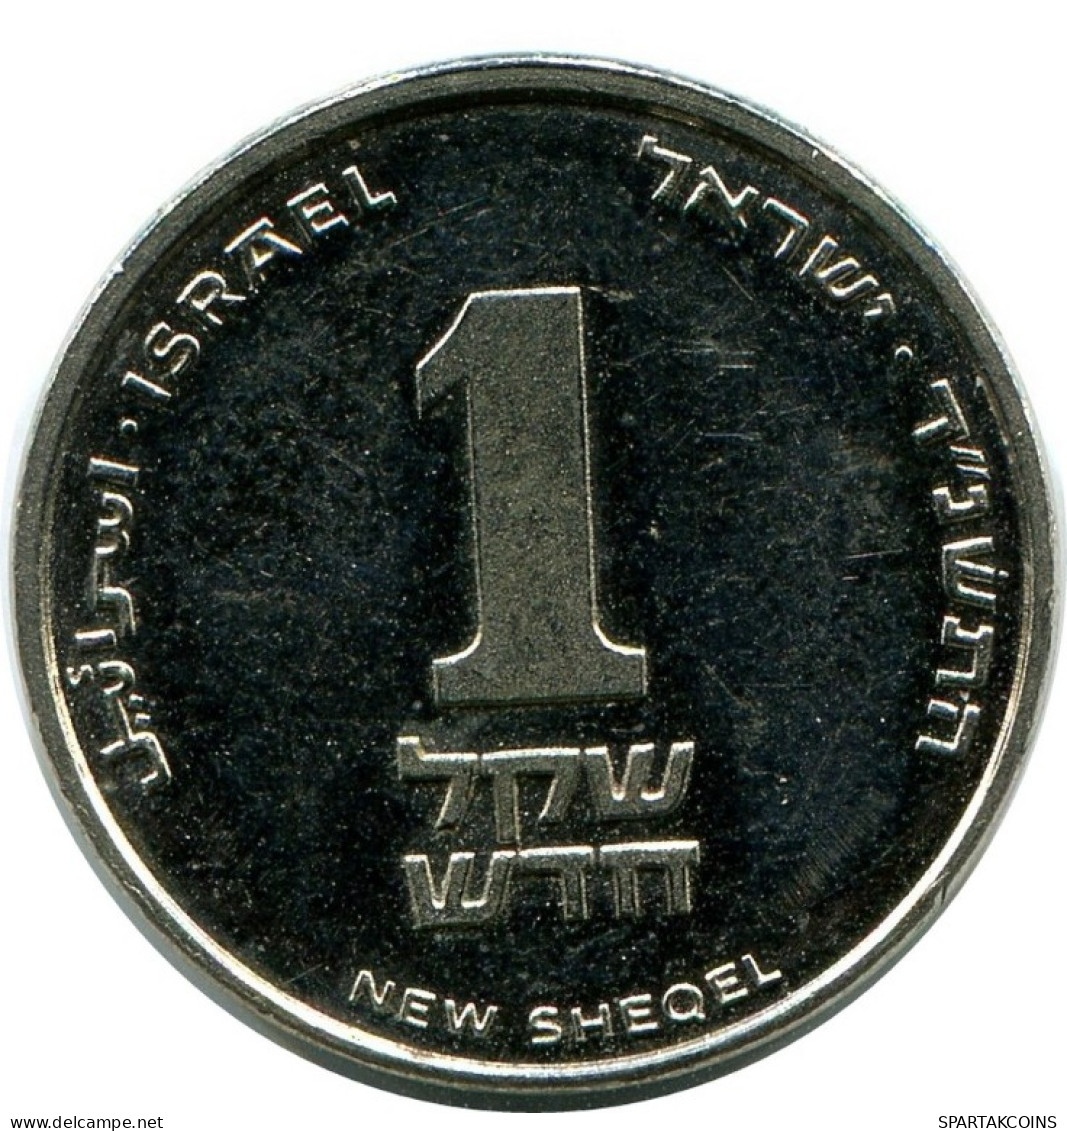 1 NEW SHEQEL 1994 ISRAEL Münze #AH950.D.A - Israel